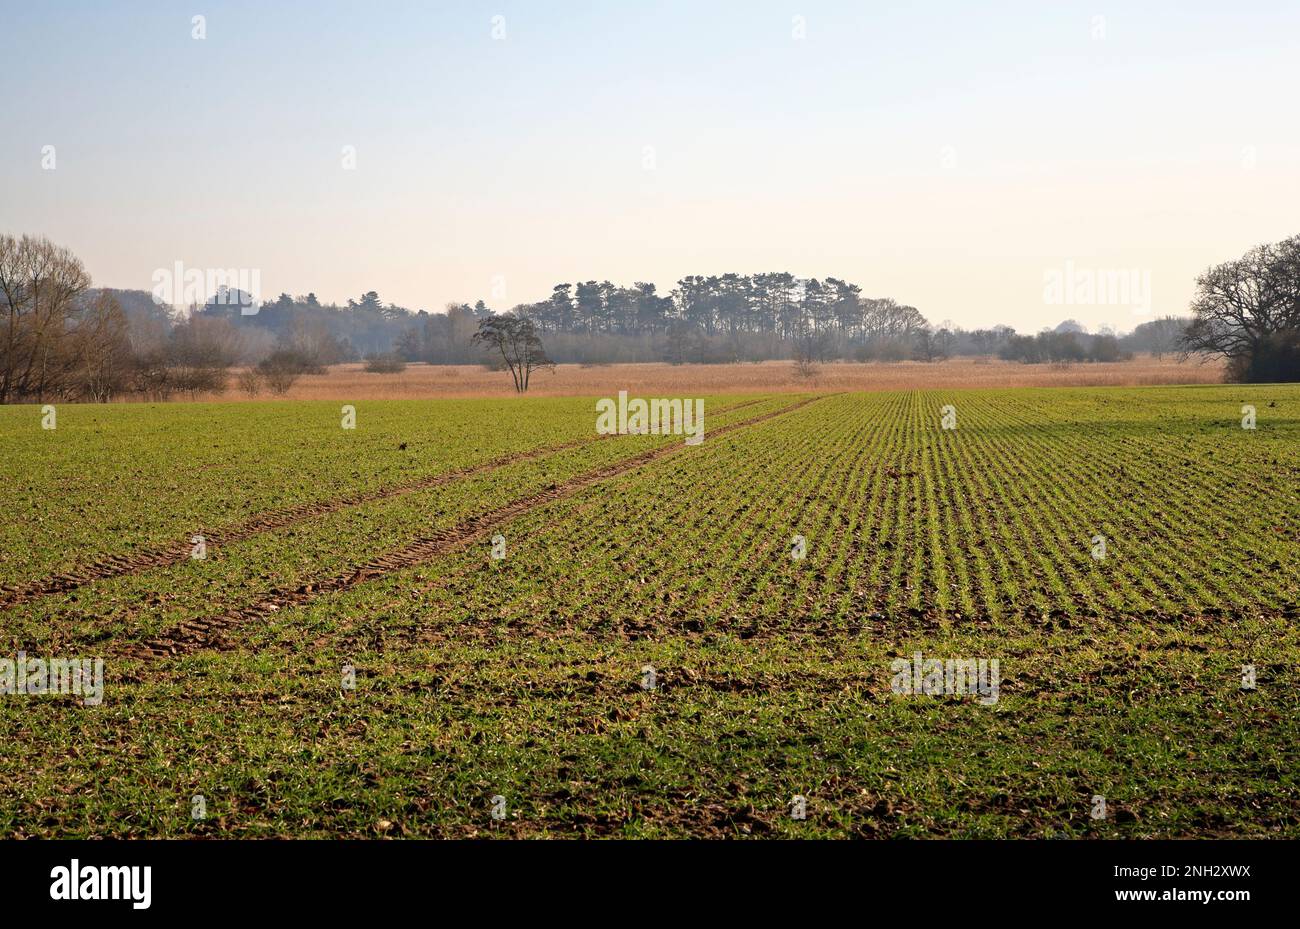 Una vista de la tierra agrícola cultivable con el crecimiento de los cultivos de cereales en invierno en los Norfolk Broads junto al río Ant en Irstead, Norfolk, Inglaterra, Reino Unido. Foto de stock